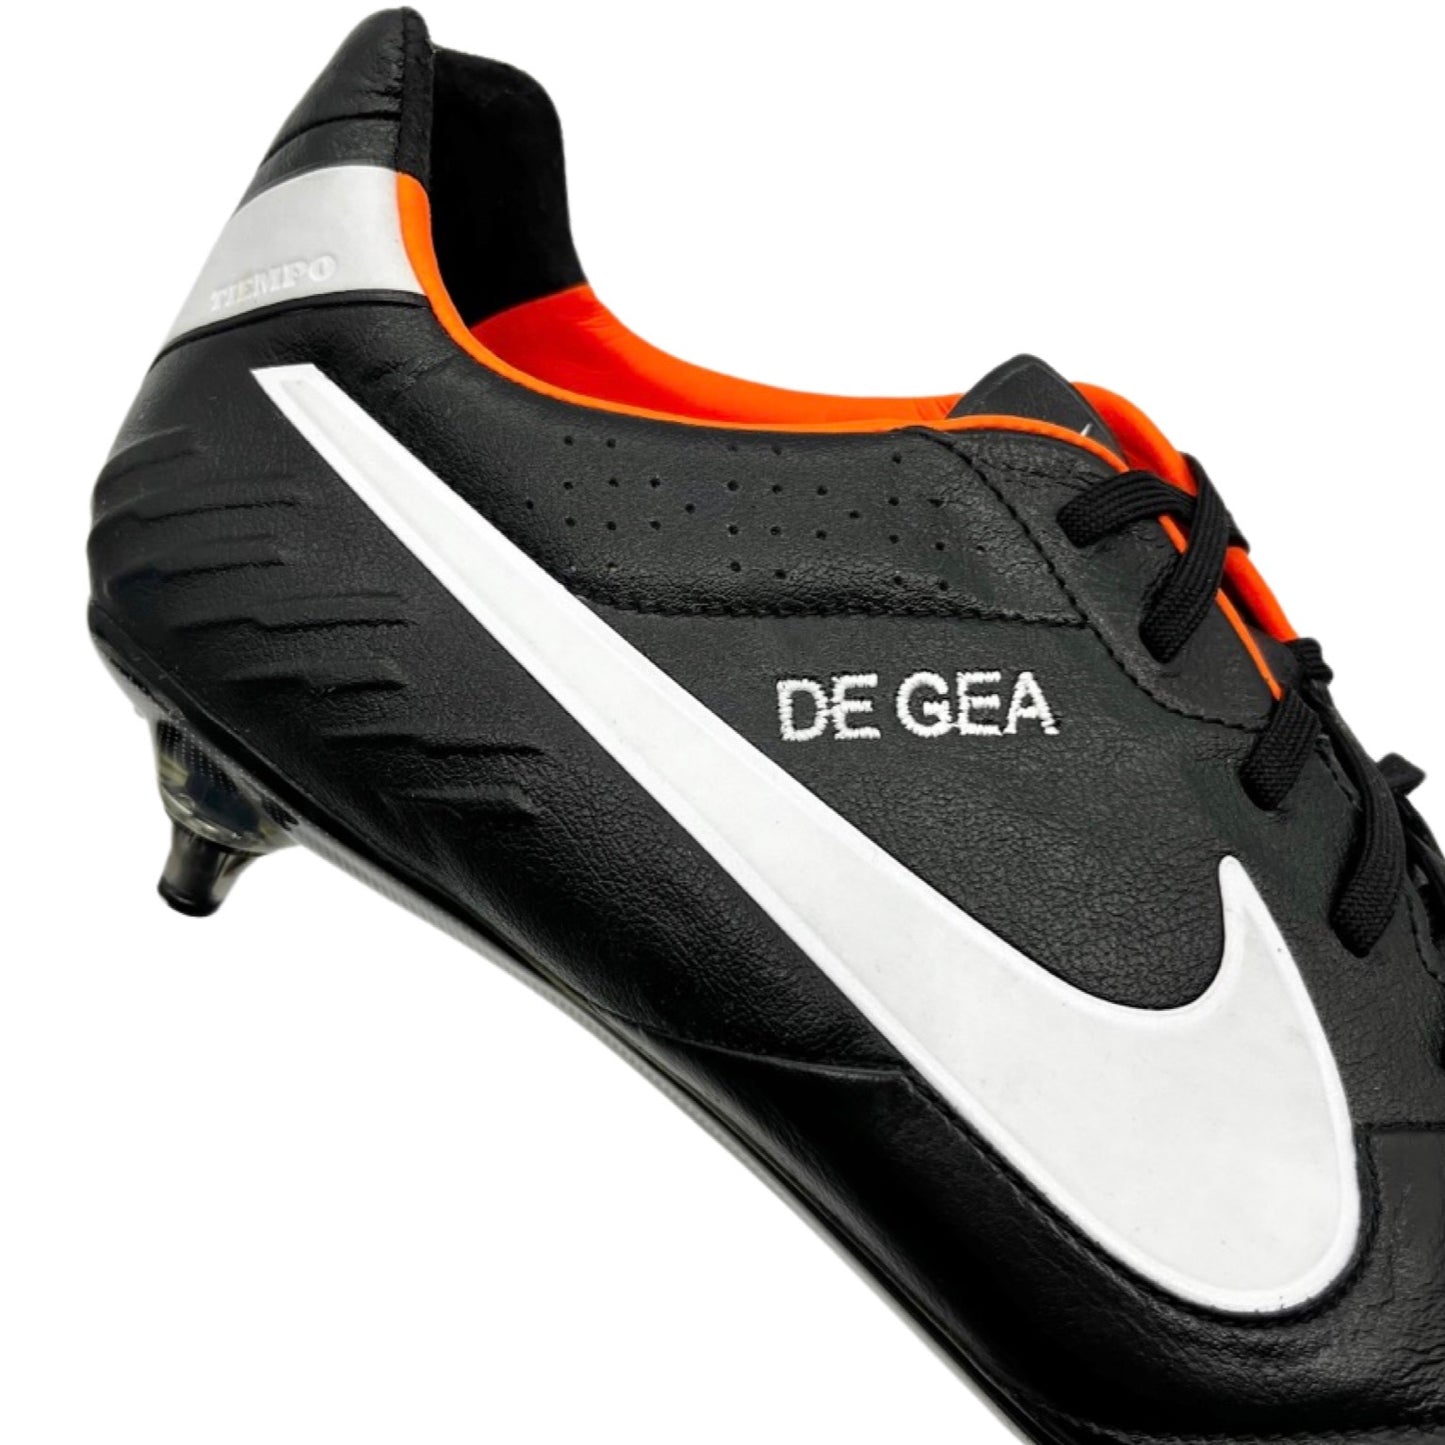 David De Gea Match Worn Nike Tiempo Legend IV